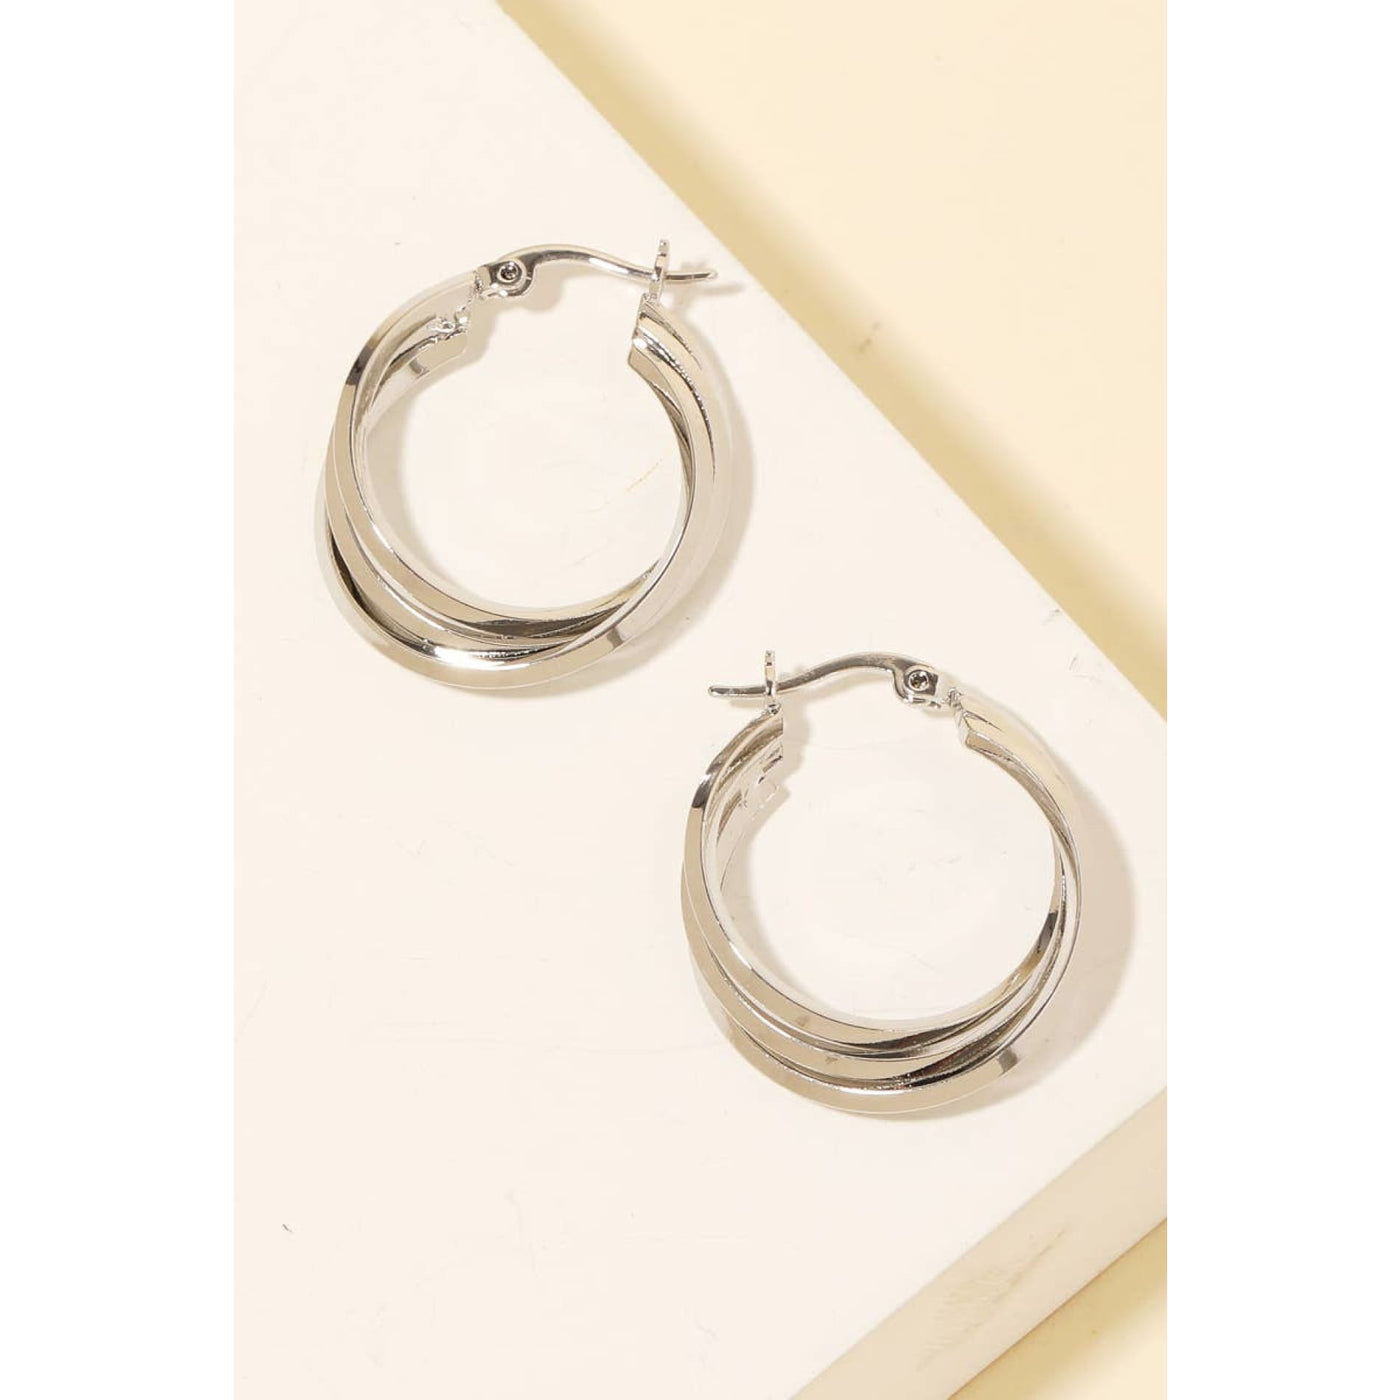 Triple Interlinked Latch Hoop Earrings - Silver - 190 Jewelry